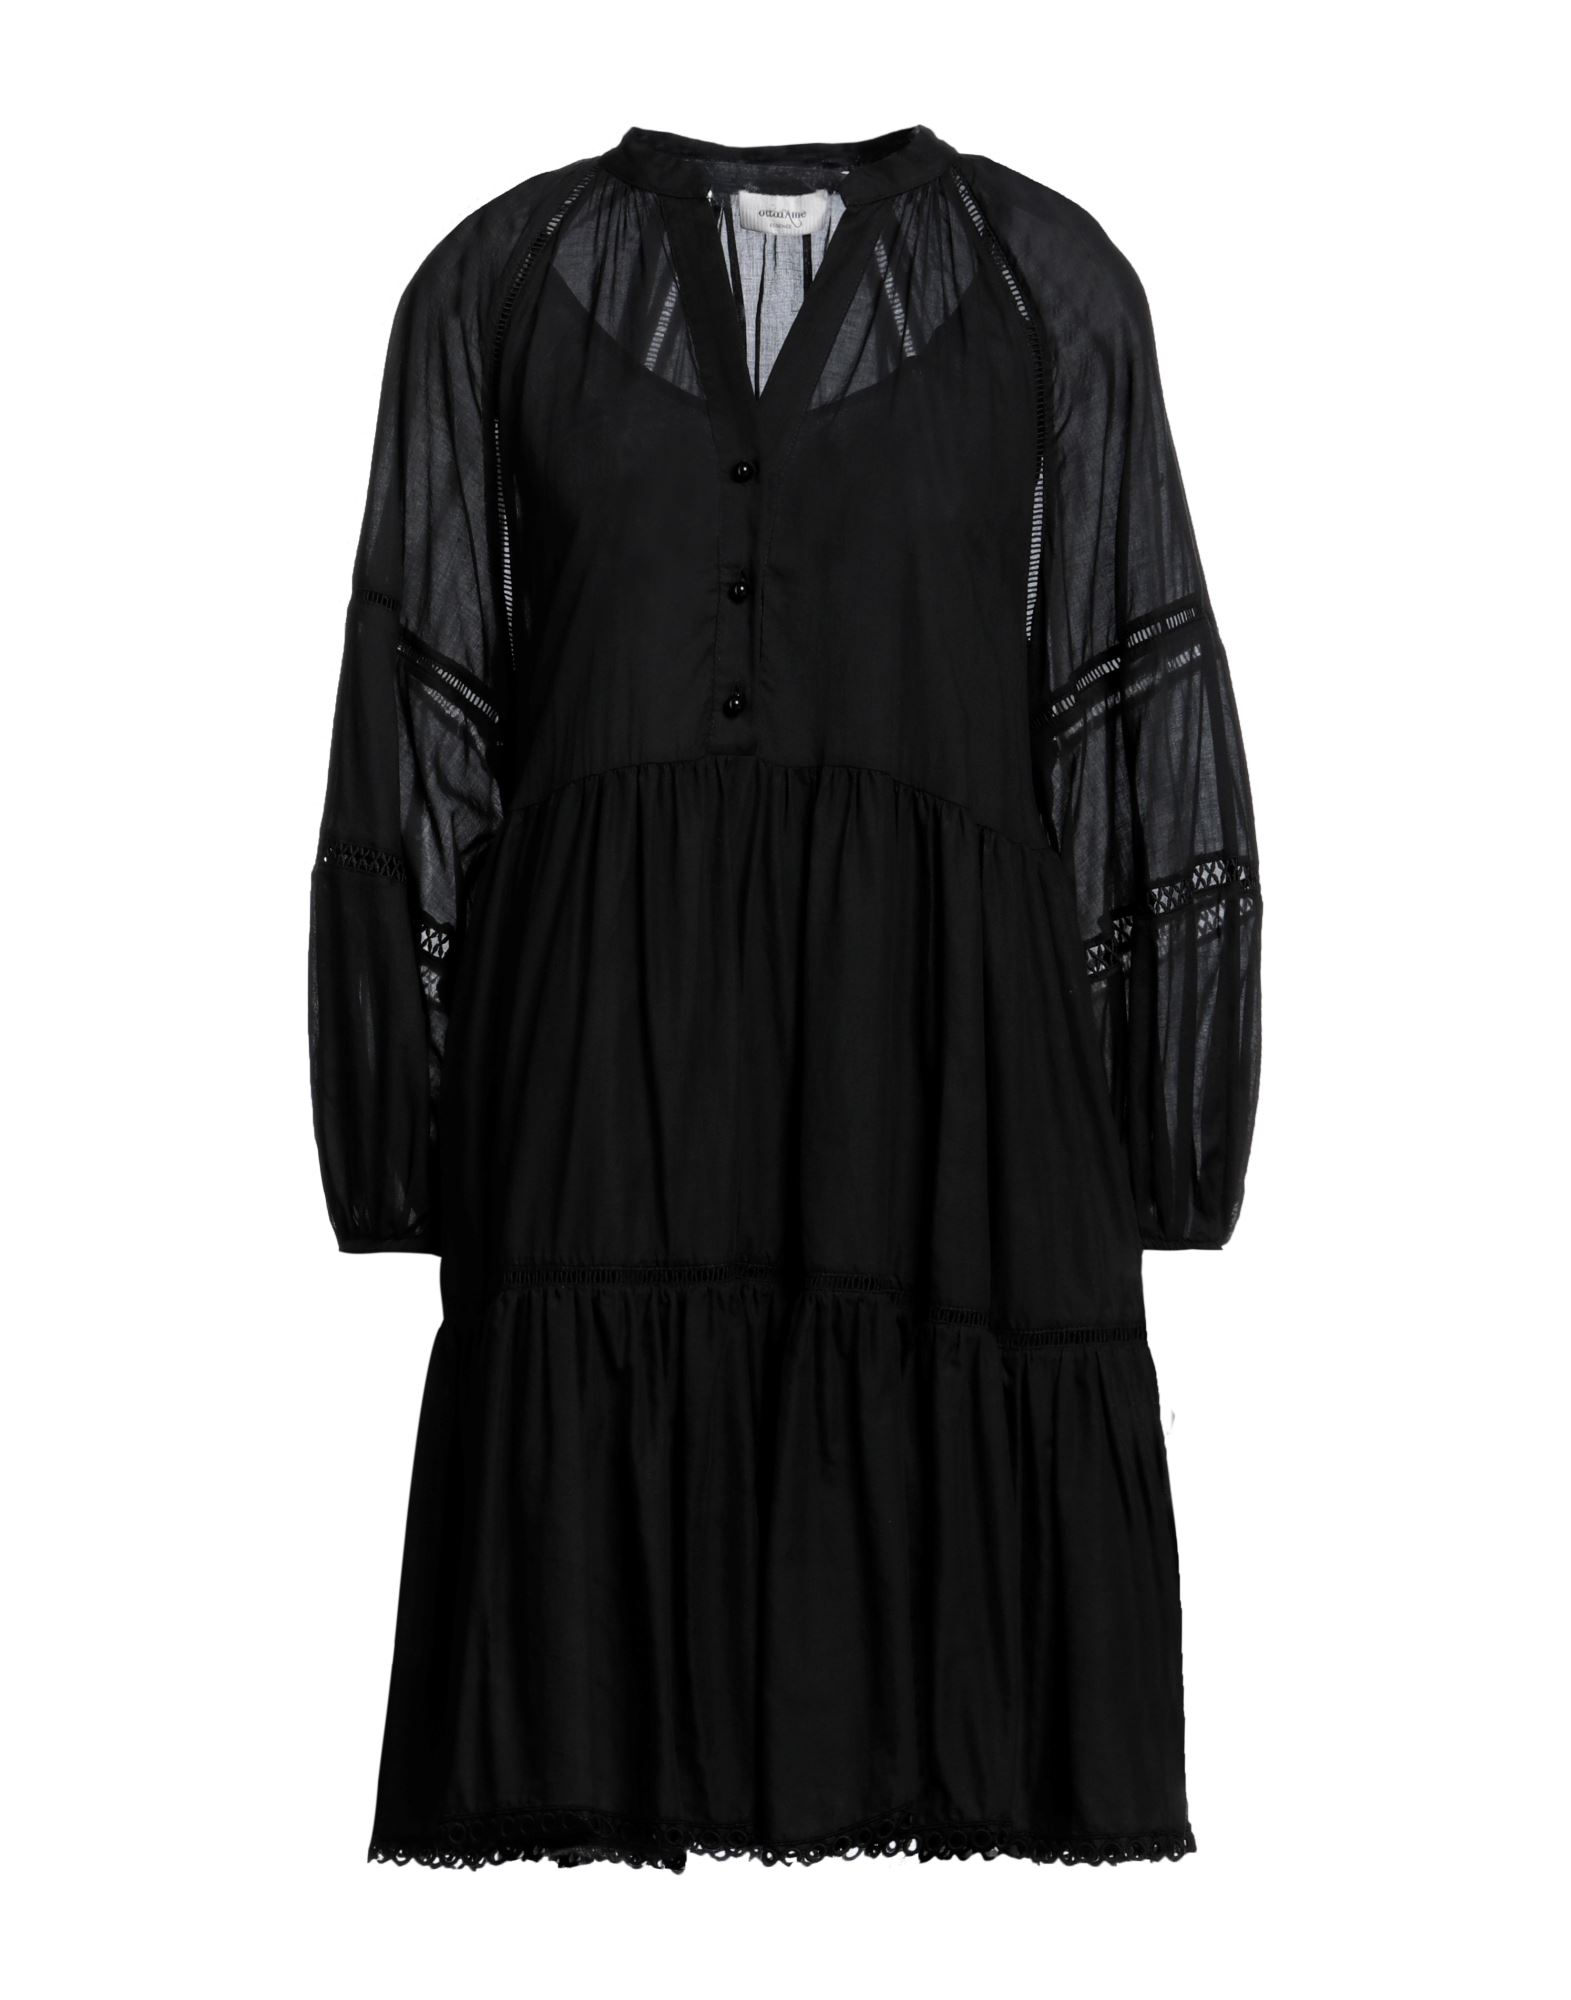 Ottod'ame Woman Short Dress Black Size 6 Cotton